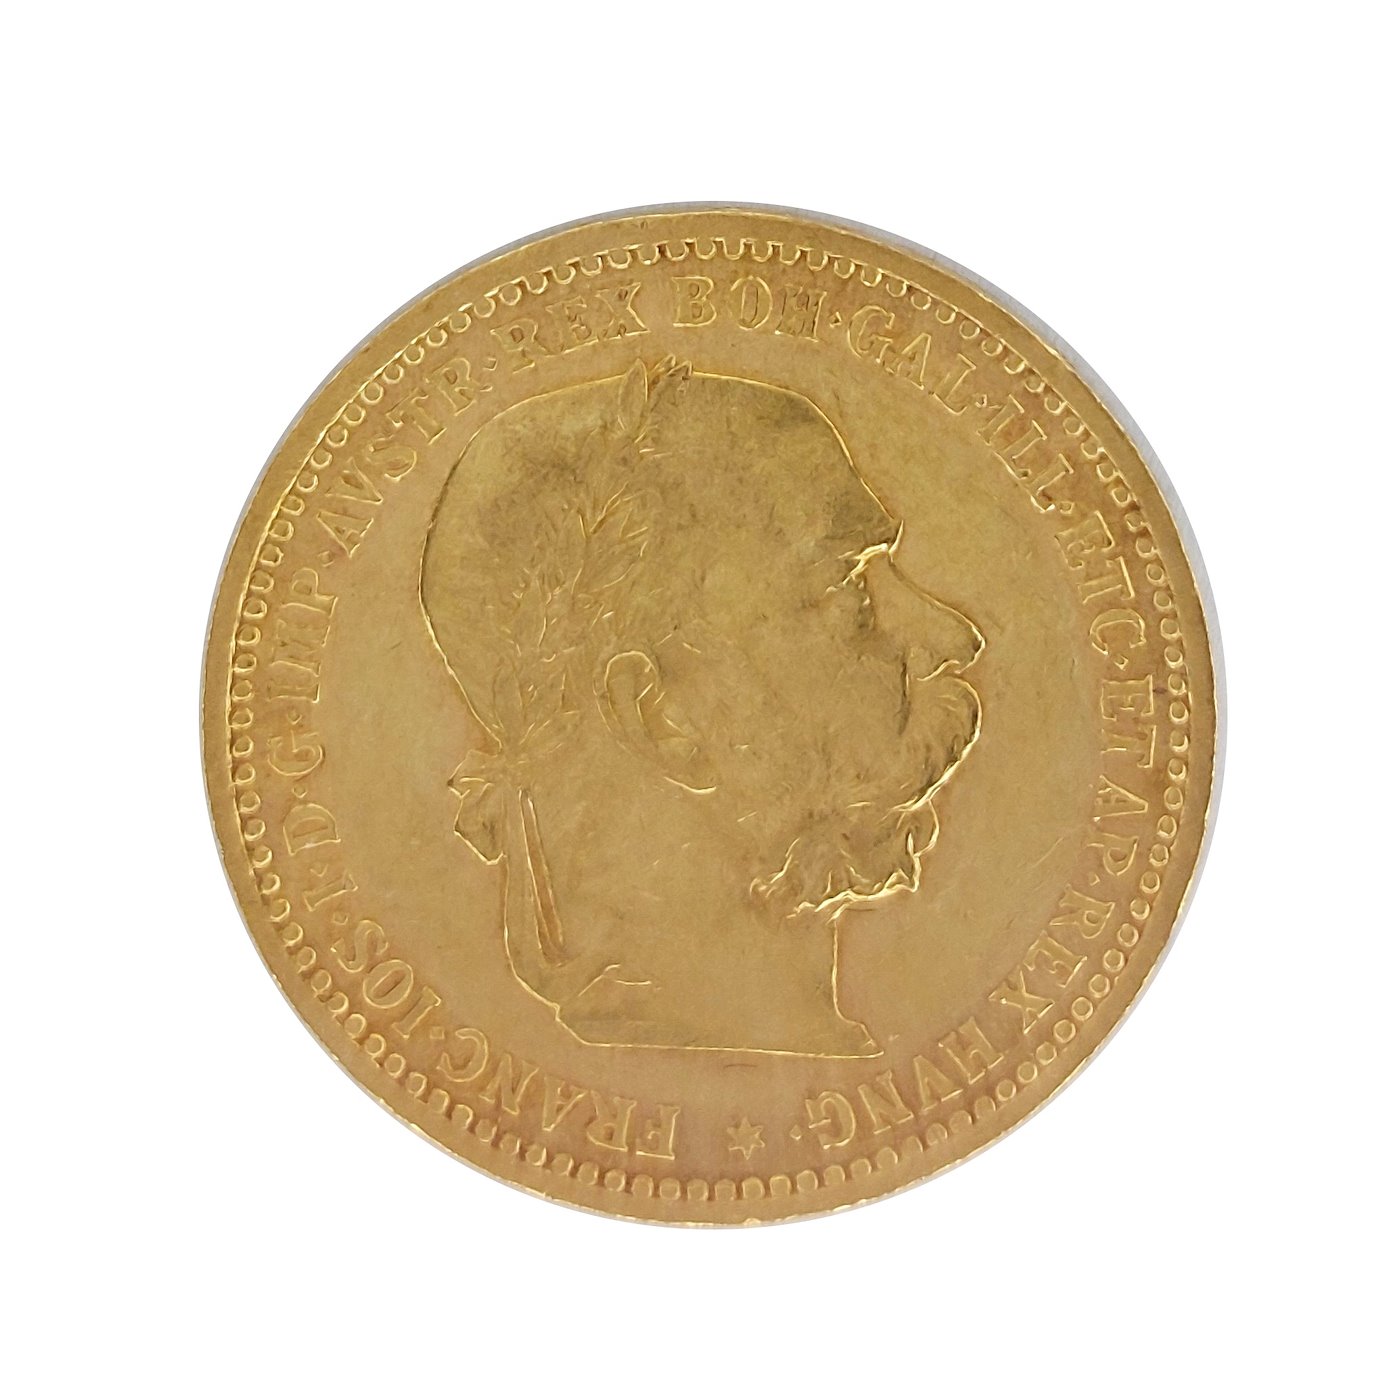 .. - Rakousko Uhersko zlatá 10 Koruna 1905 rakouská,  zlato 900/1000, hrubá hmotnost mince 3,387 g